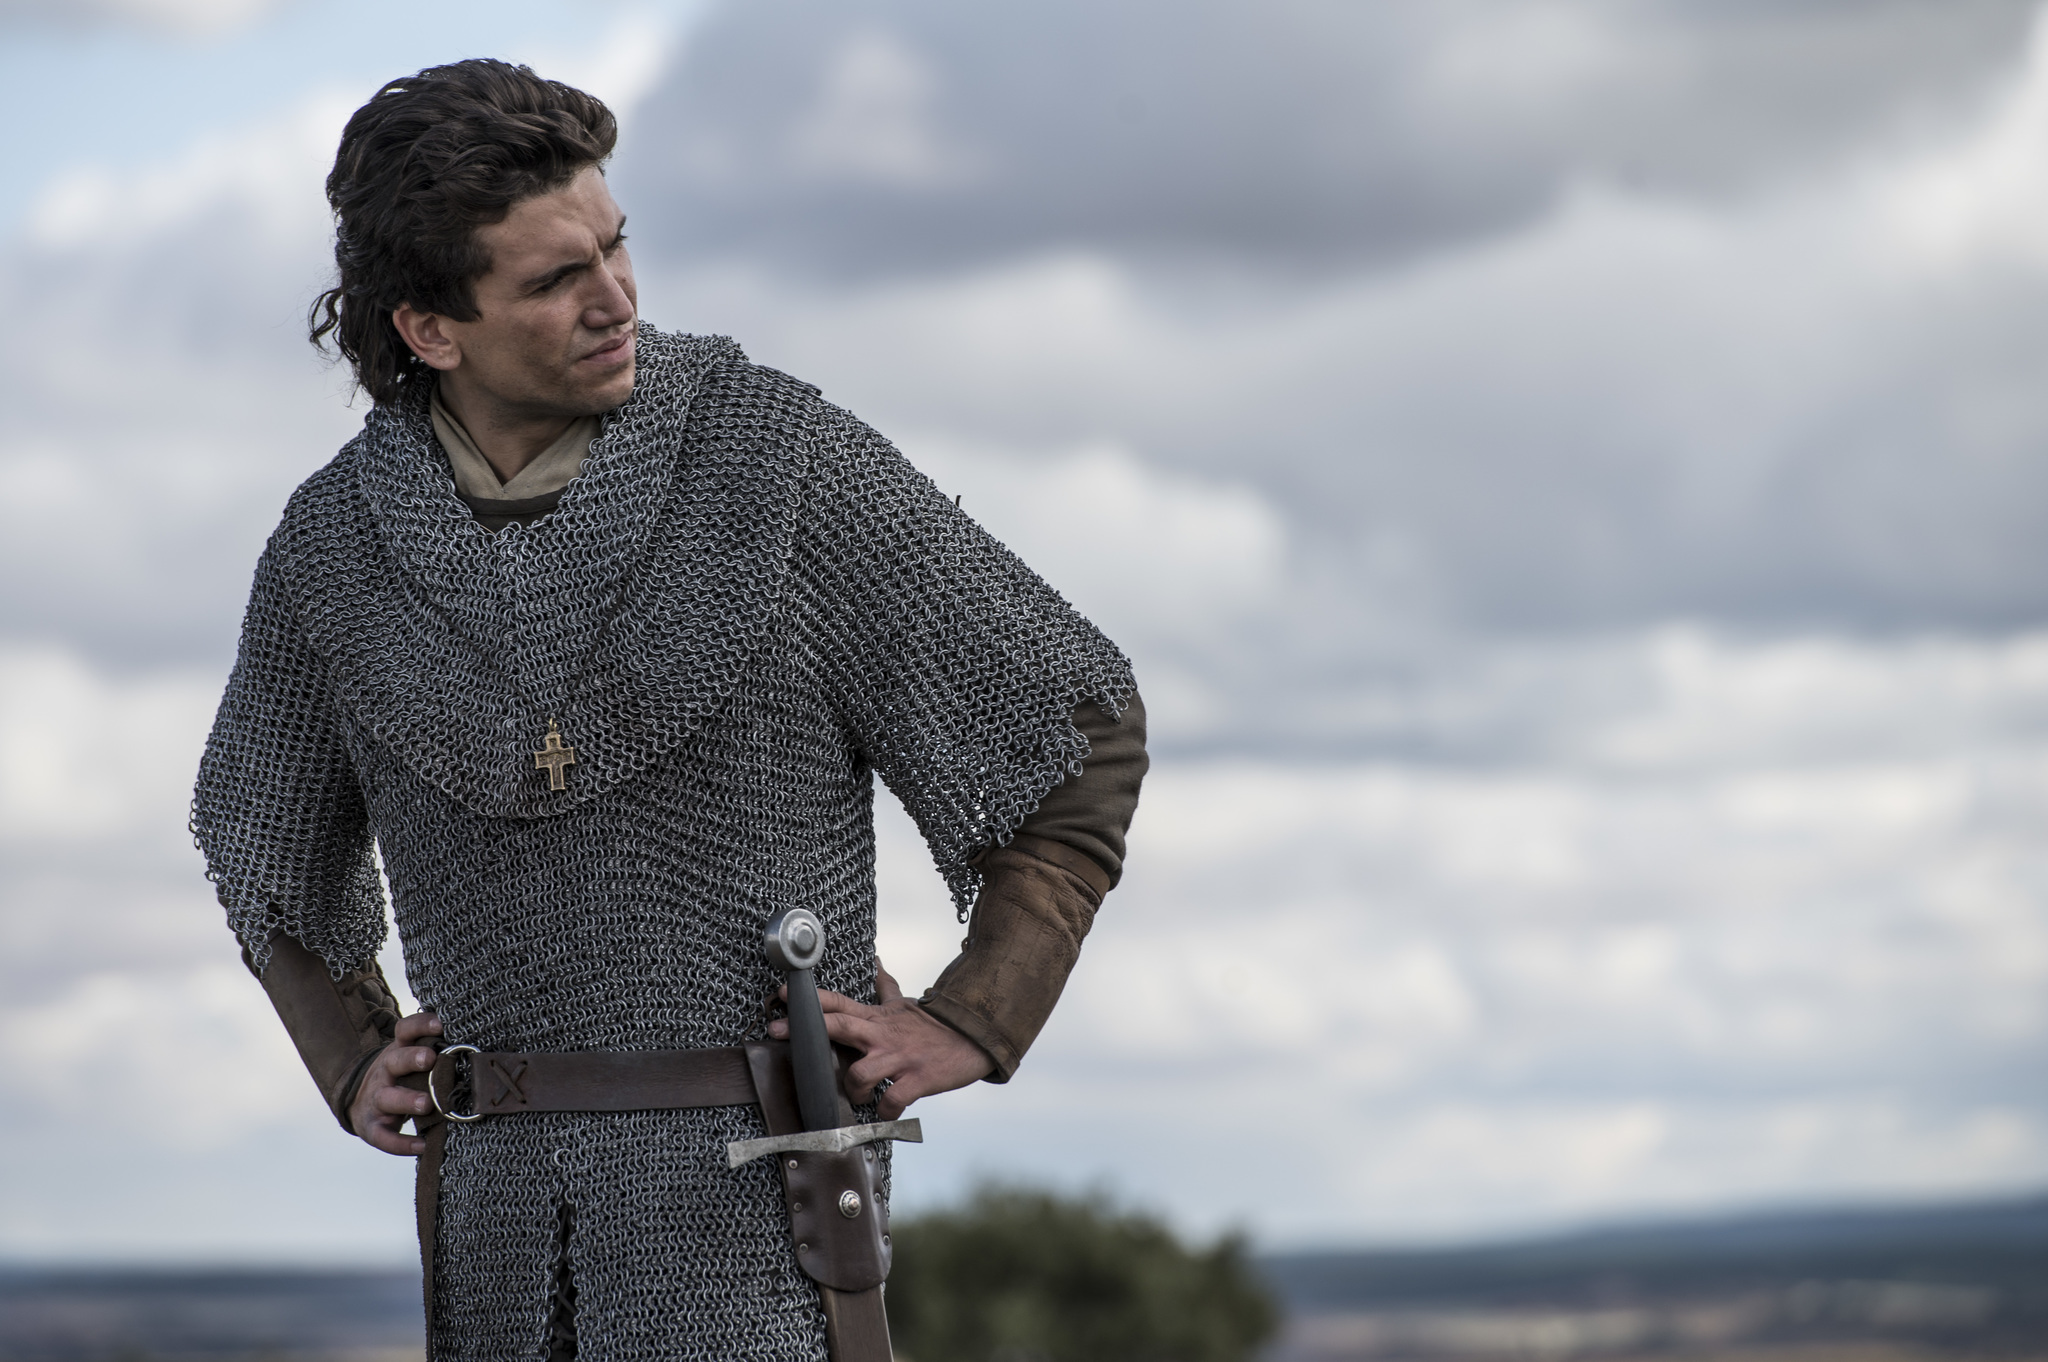 Jaime Lorente, en el papel de El Cid en la serie de Amazon Prime Video.